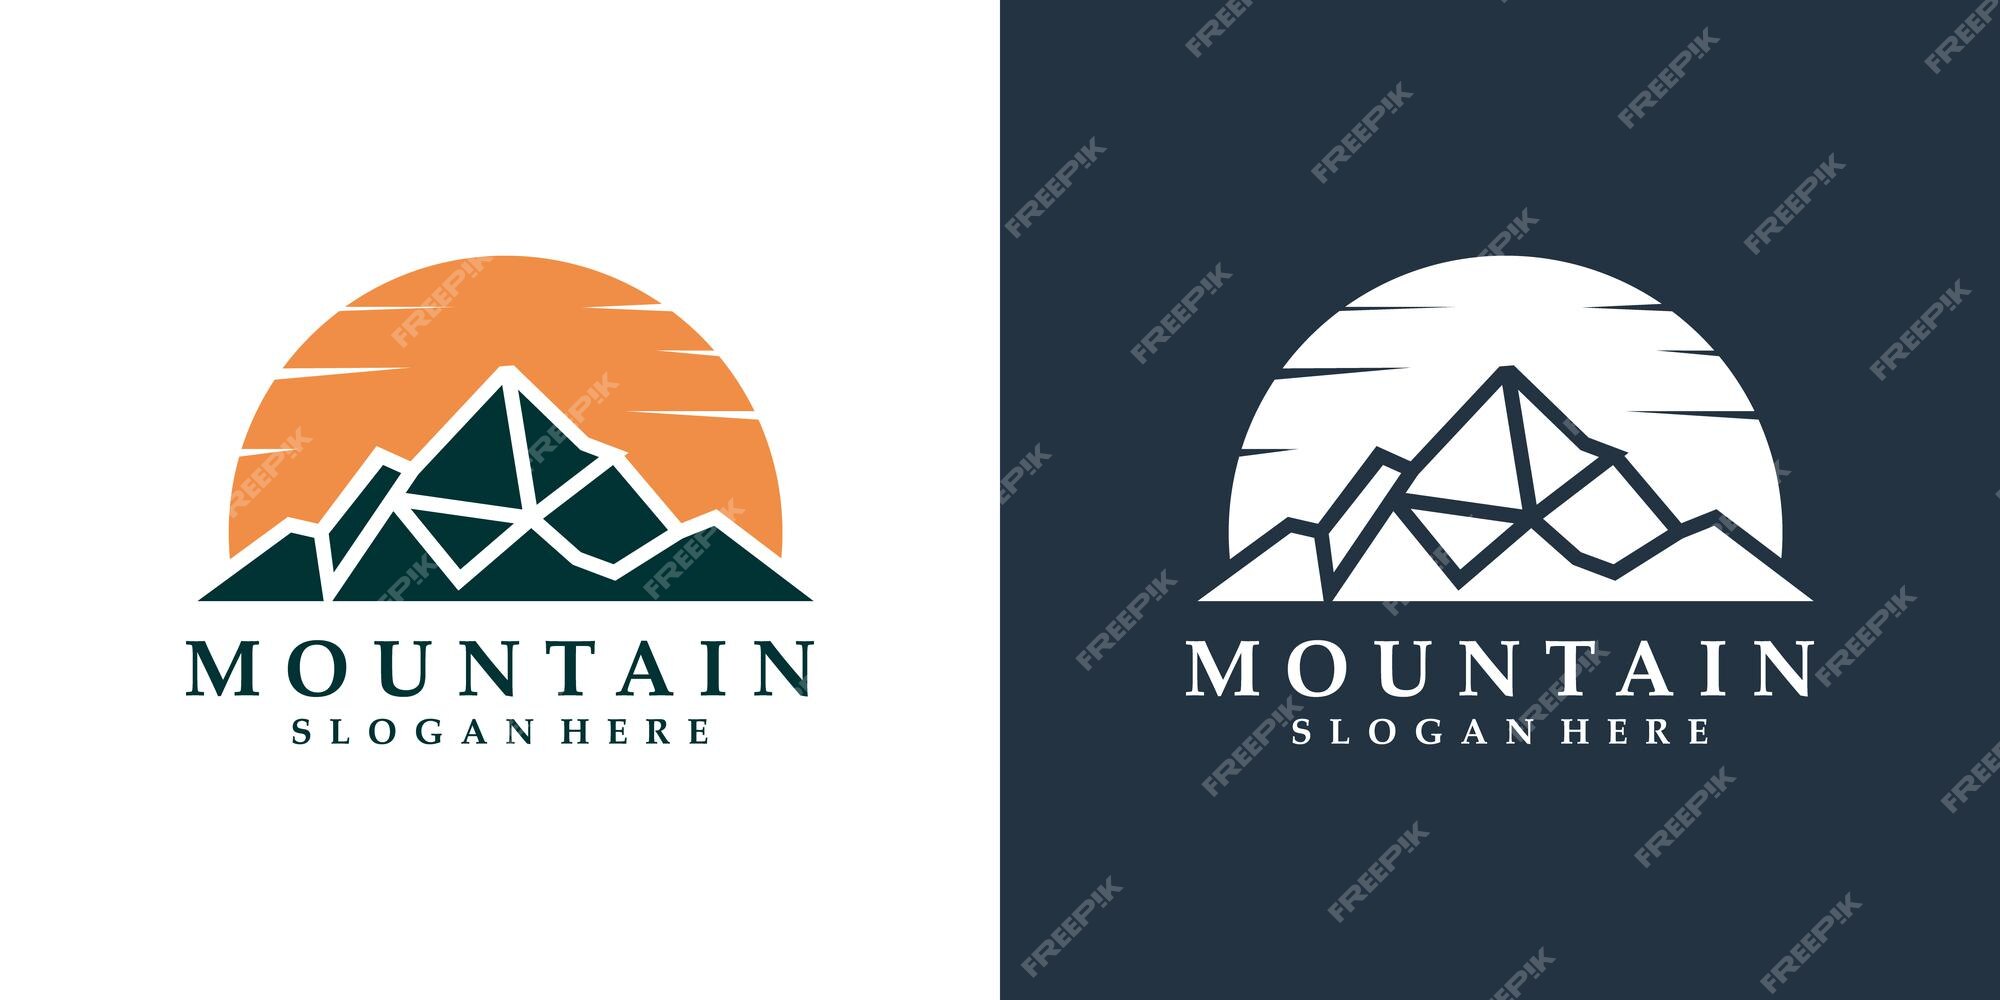 Premium Vector | Mountain logo design template